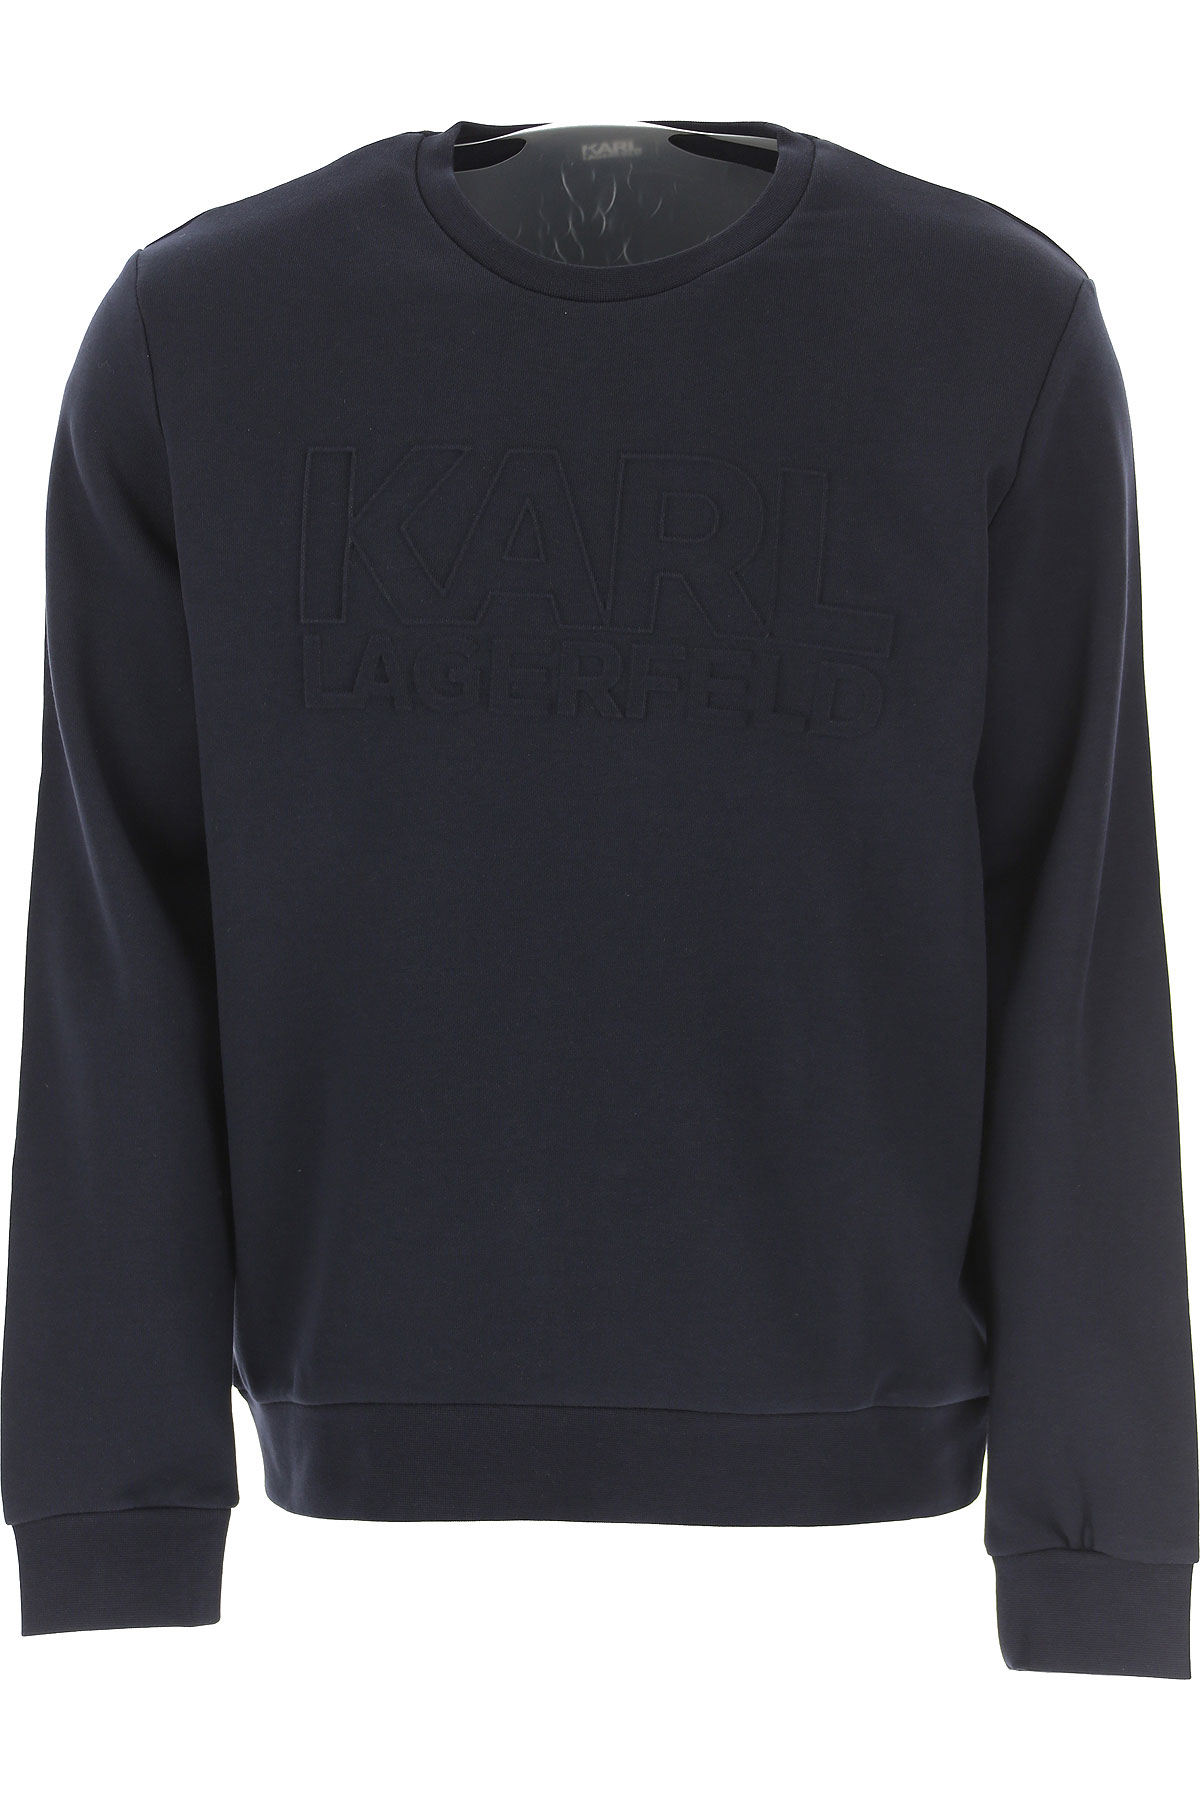 Karl Lagerfeld Sweatshirt für Herren, Kapuzenpulli, Hoodie, Sweats Günstig im Sale, Schwarz, Baumwolle, 2017, L M S